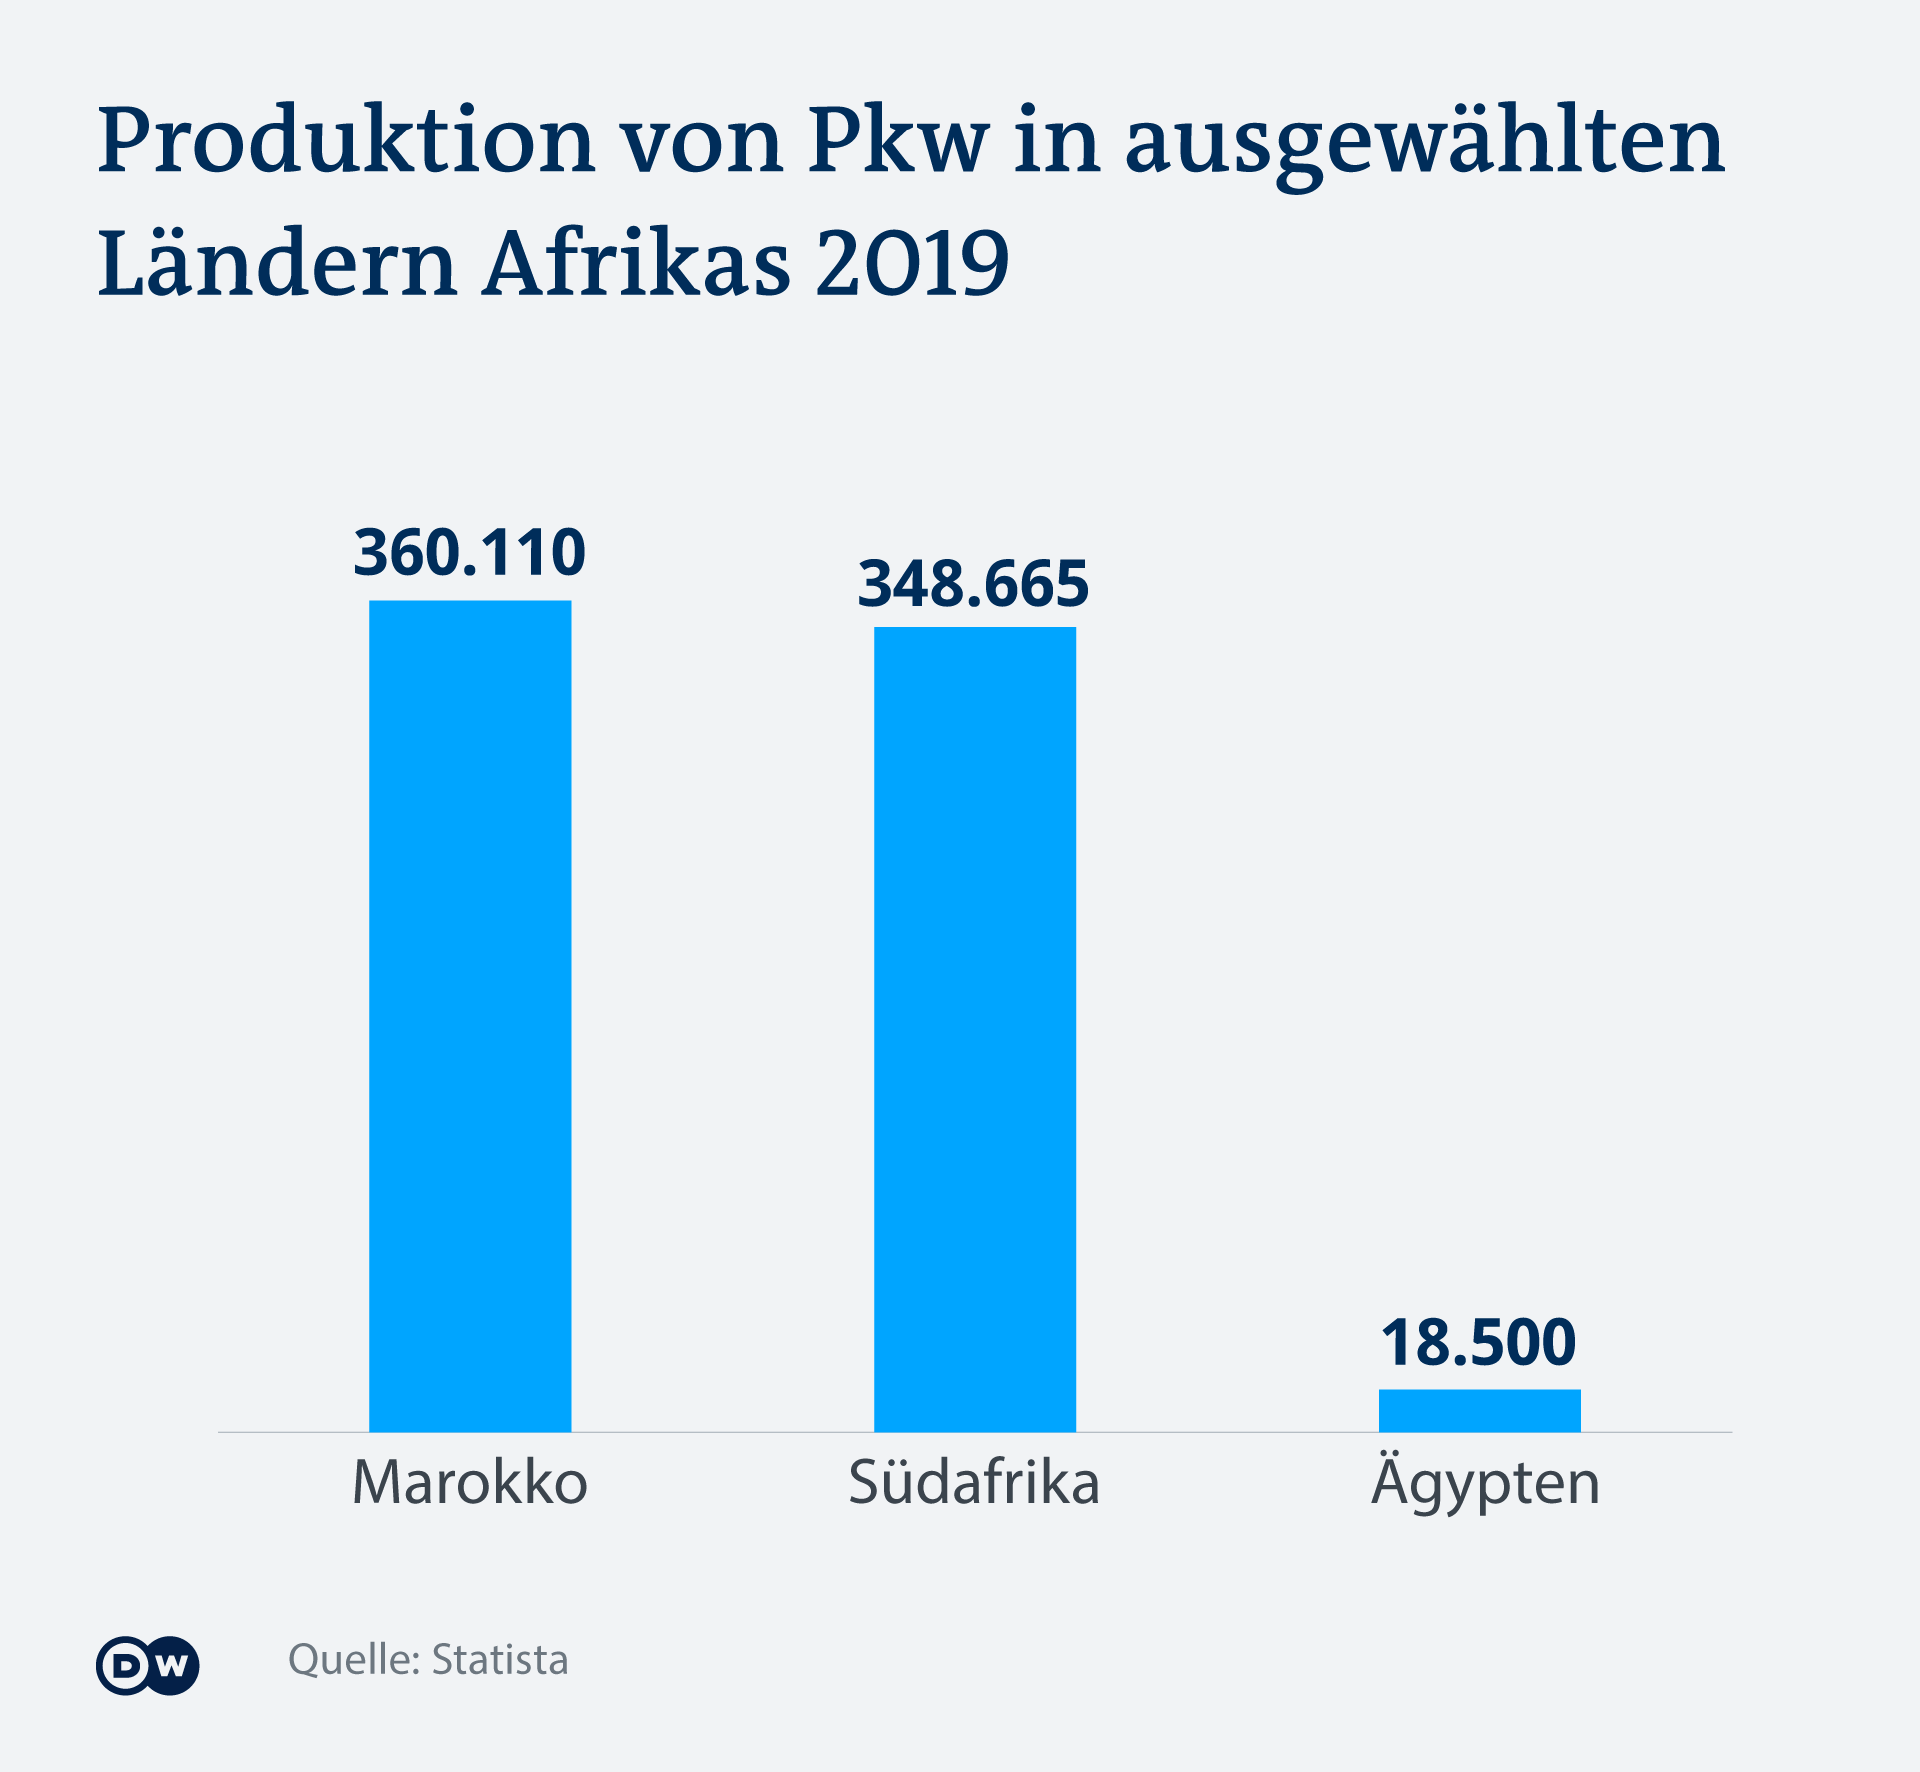 Der Großteil der Autoproduktion findet in zwei Ländern statt